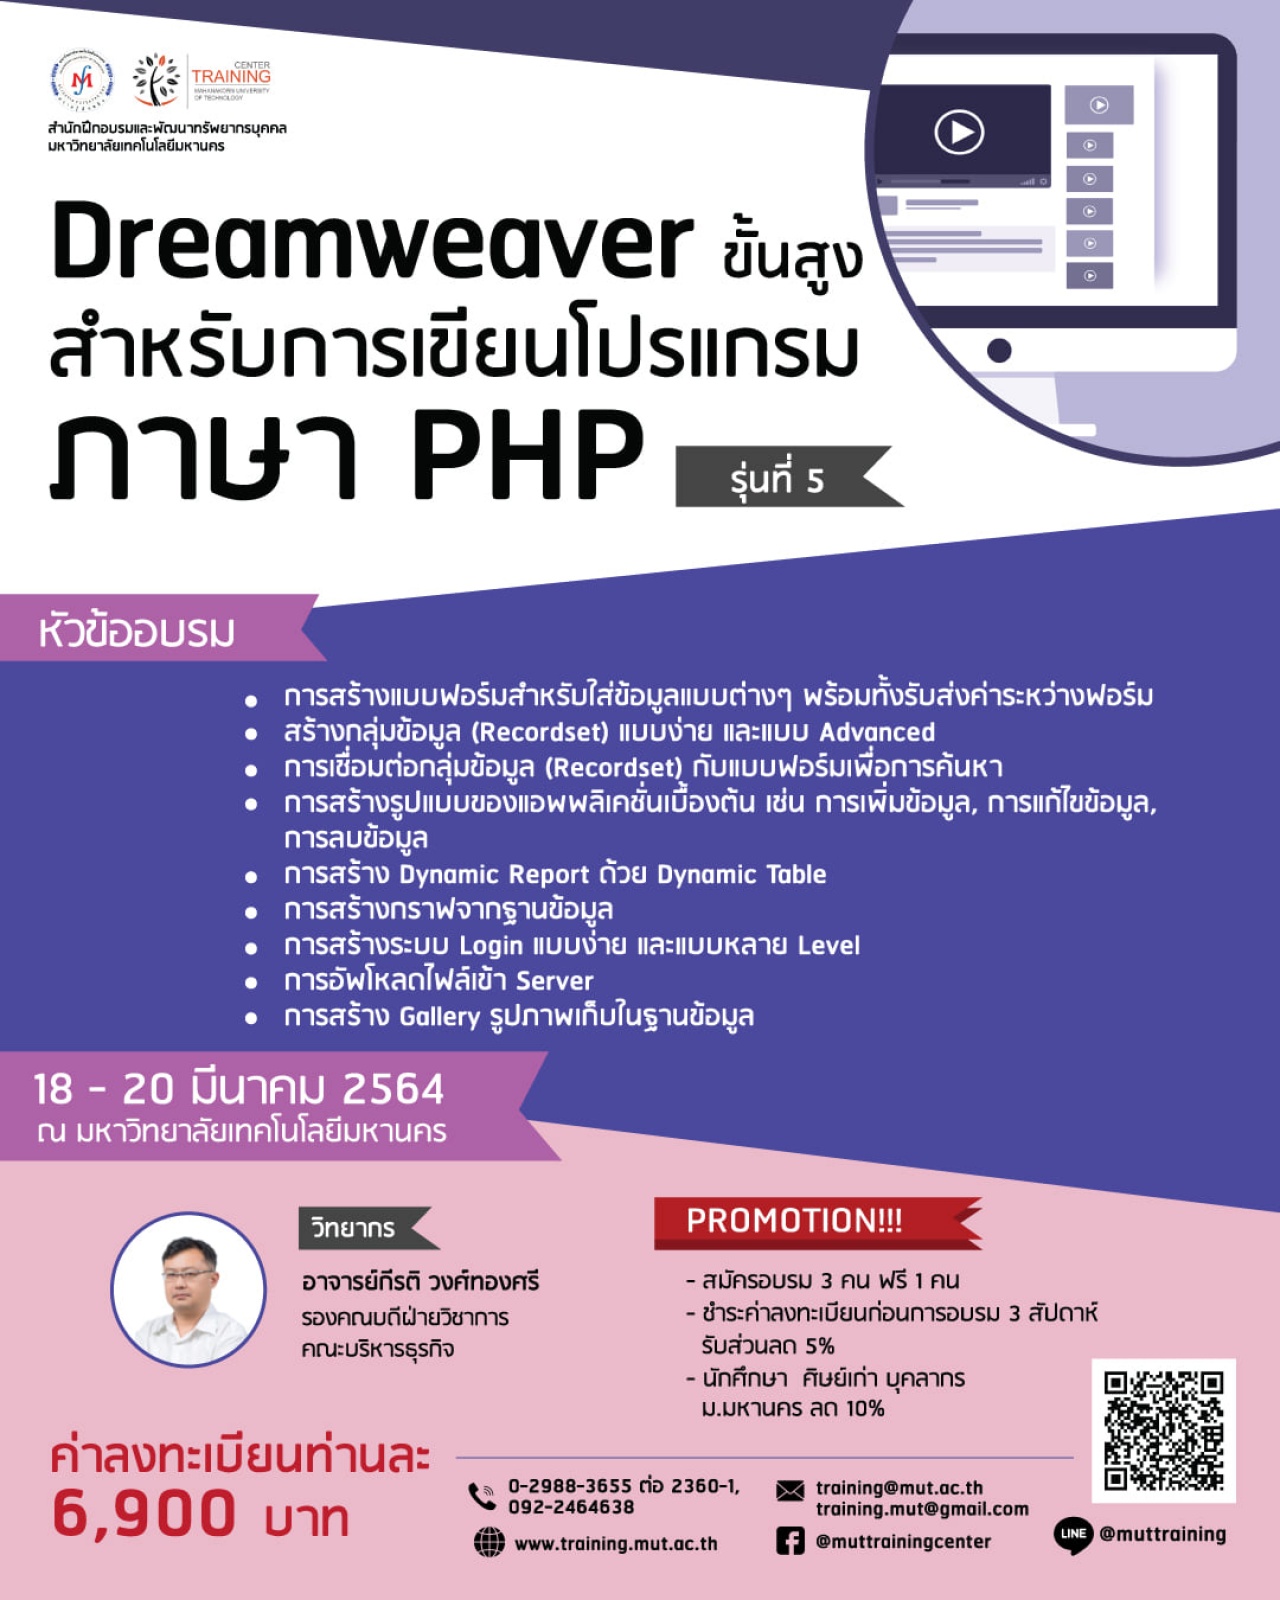 โครงการอบรม Dreamweaver ขั้นสูงสำหรับการเขียนโปรแกรมภาษา PHP (Advanced Dreamweaver for PHP Programming) รุ่นที่ 5